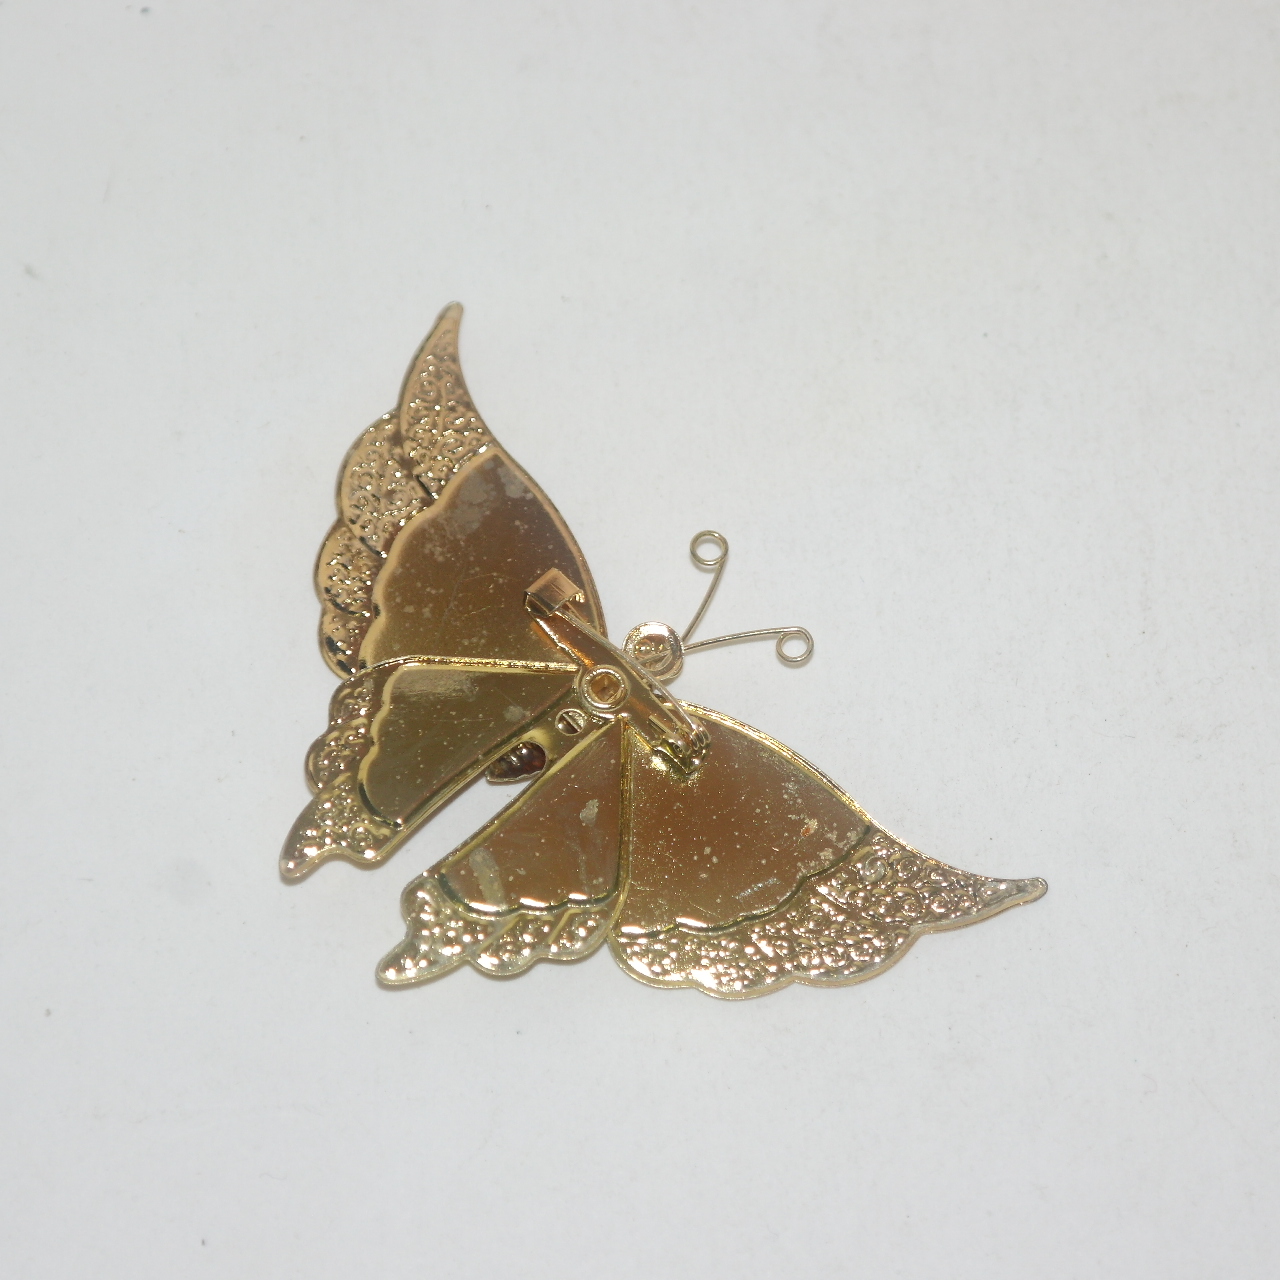 금속재질에 칠보된 나비 브롯지